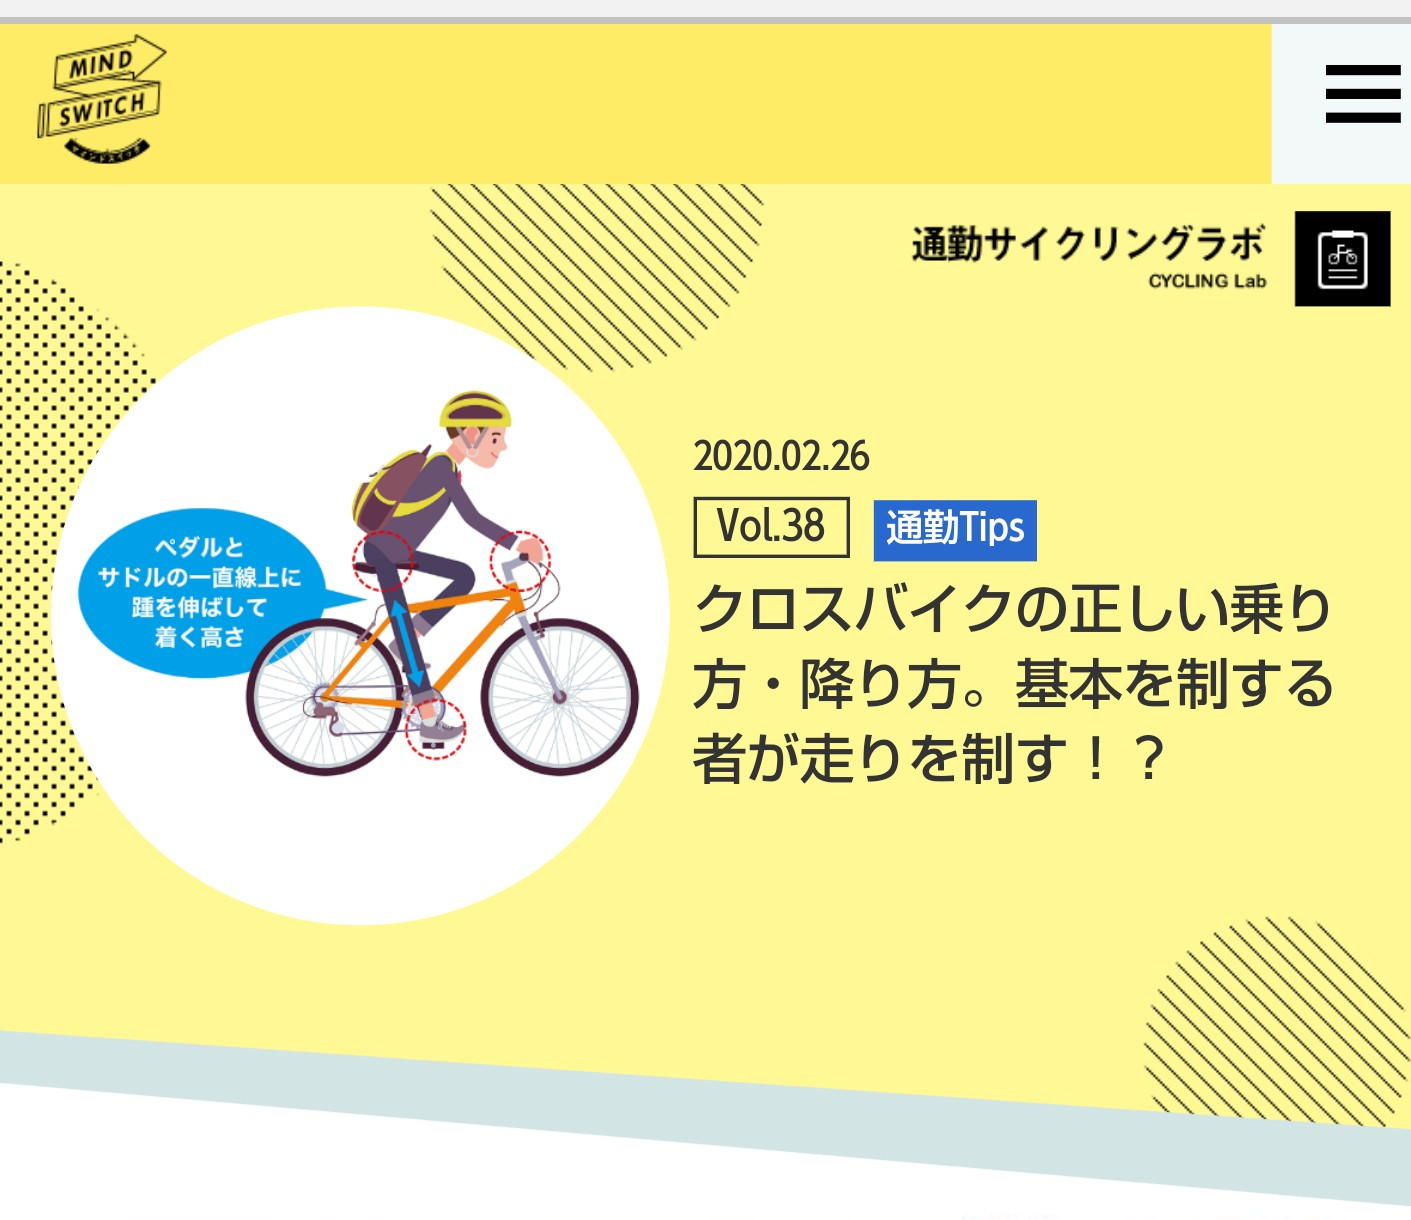 https://bike.shimano.com/ja-jp/mindswitch/lab/38/